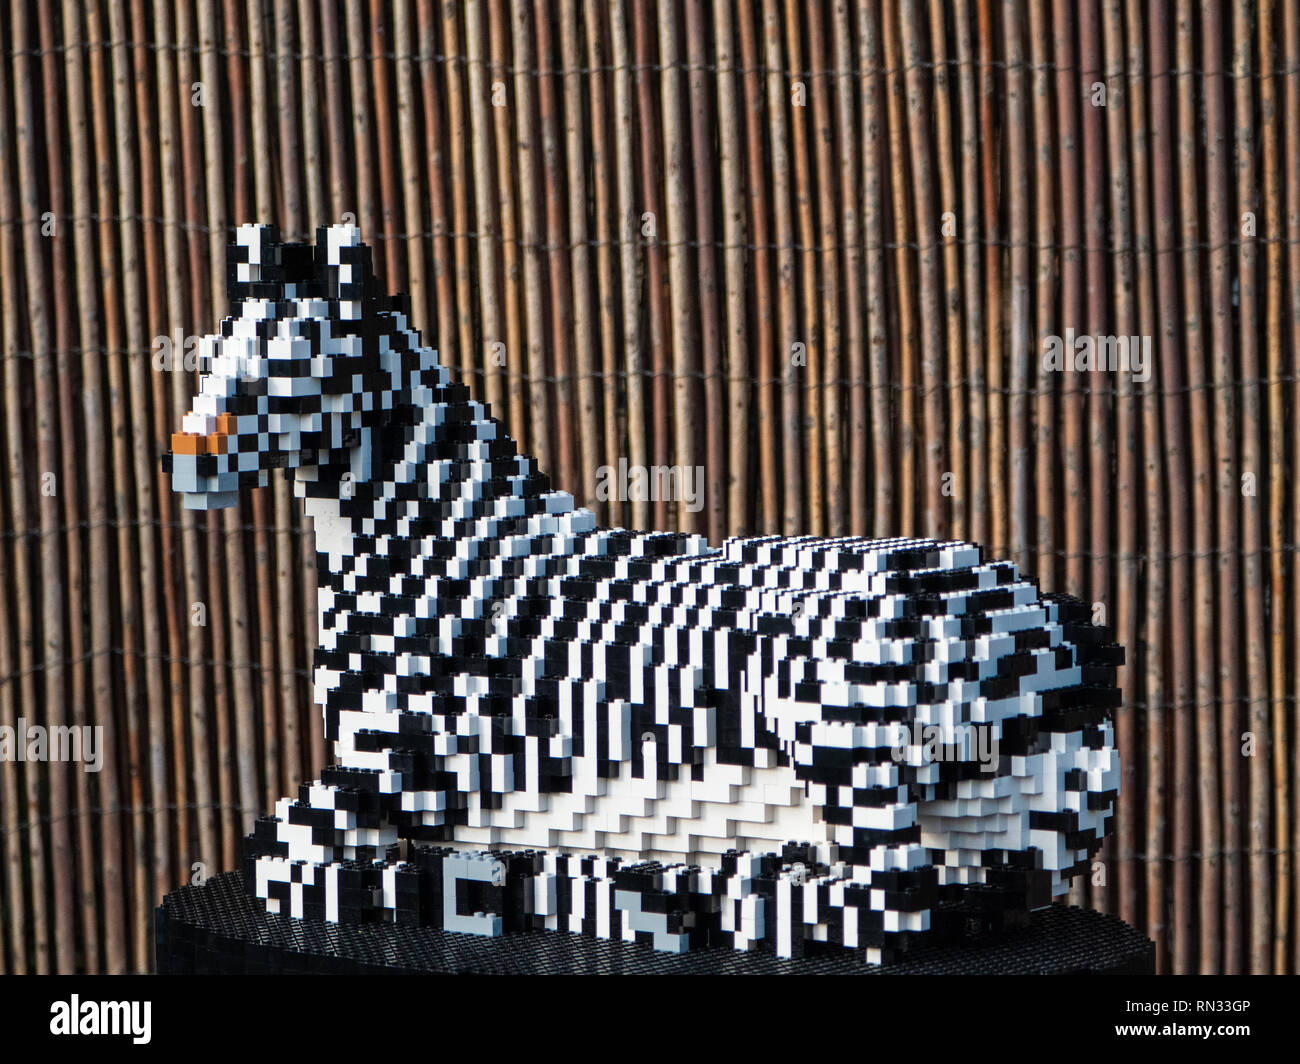 Zebra Toy Banque d'image et photos - Alamy